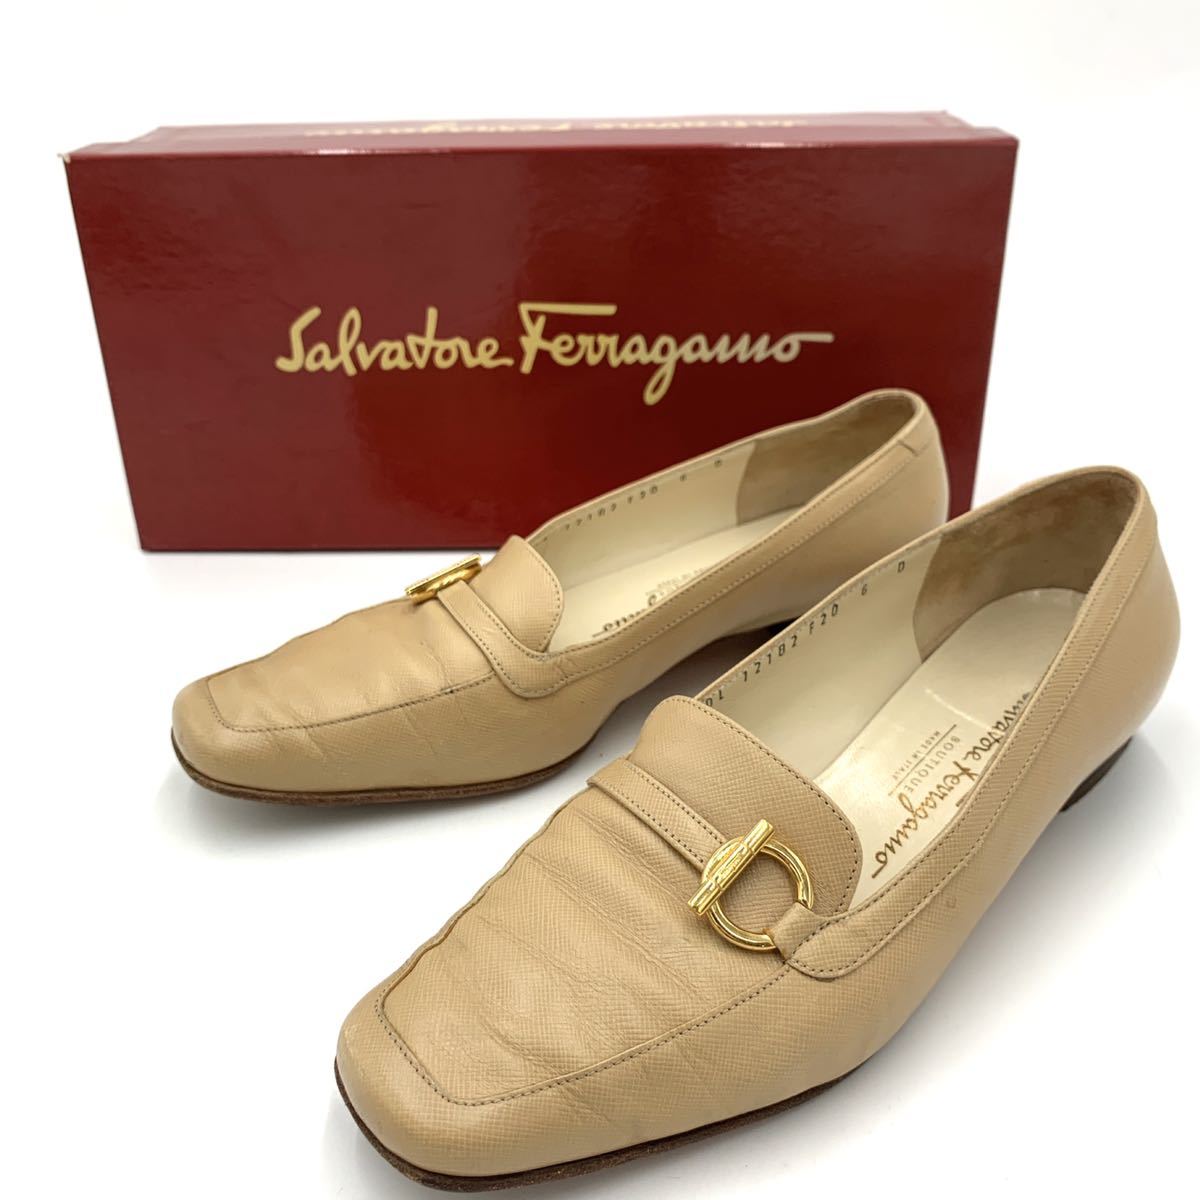 Salvatore Ferragamo/サルヴァトーレ フェラガモ シングルモンク ストラップ 革靴 24.5cm～25cm イタリア製 ブラック ビジネスシューズ 靴 - 24